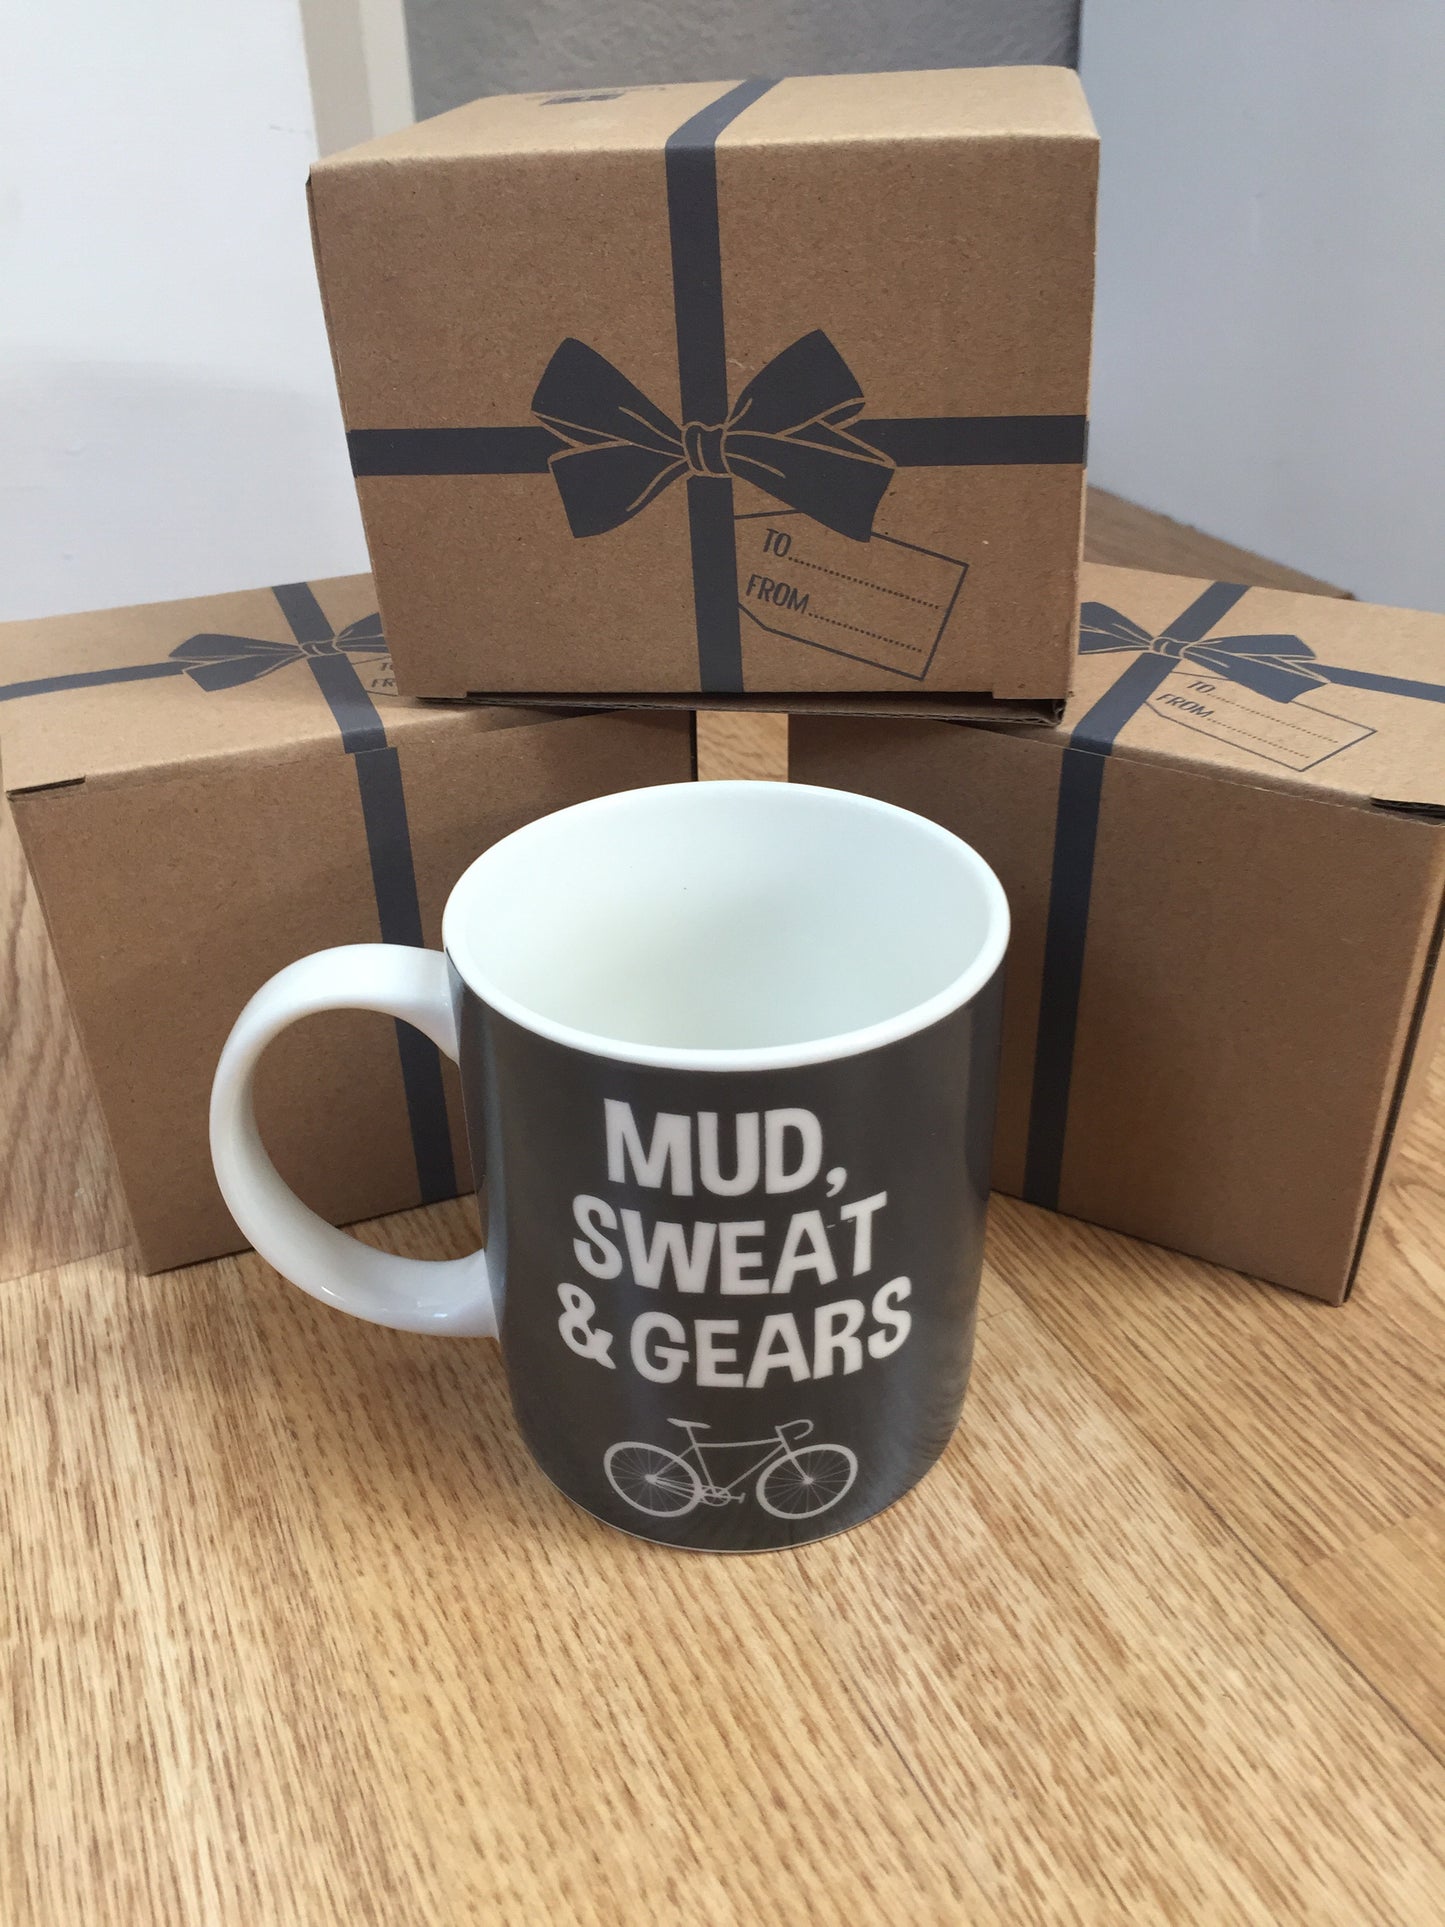 Mud, Sweat & Gears Bicycle Mug